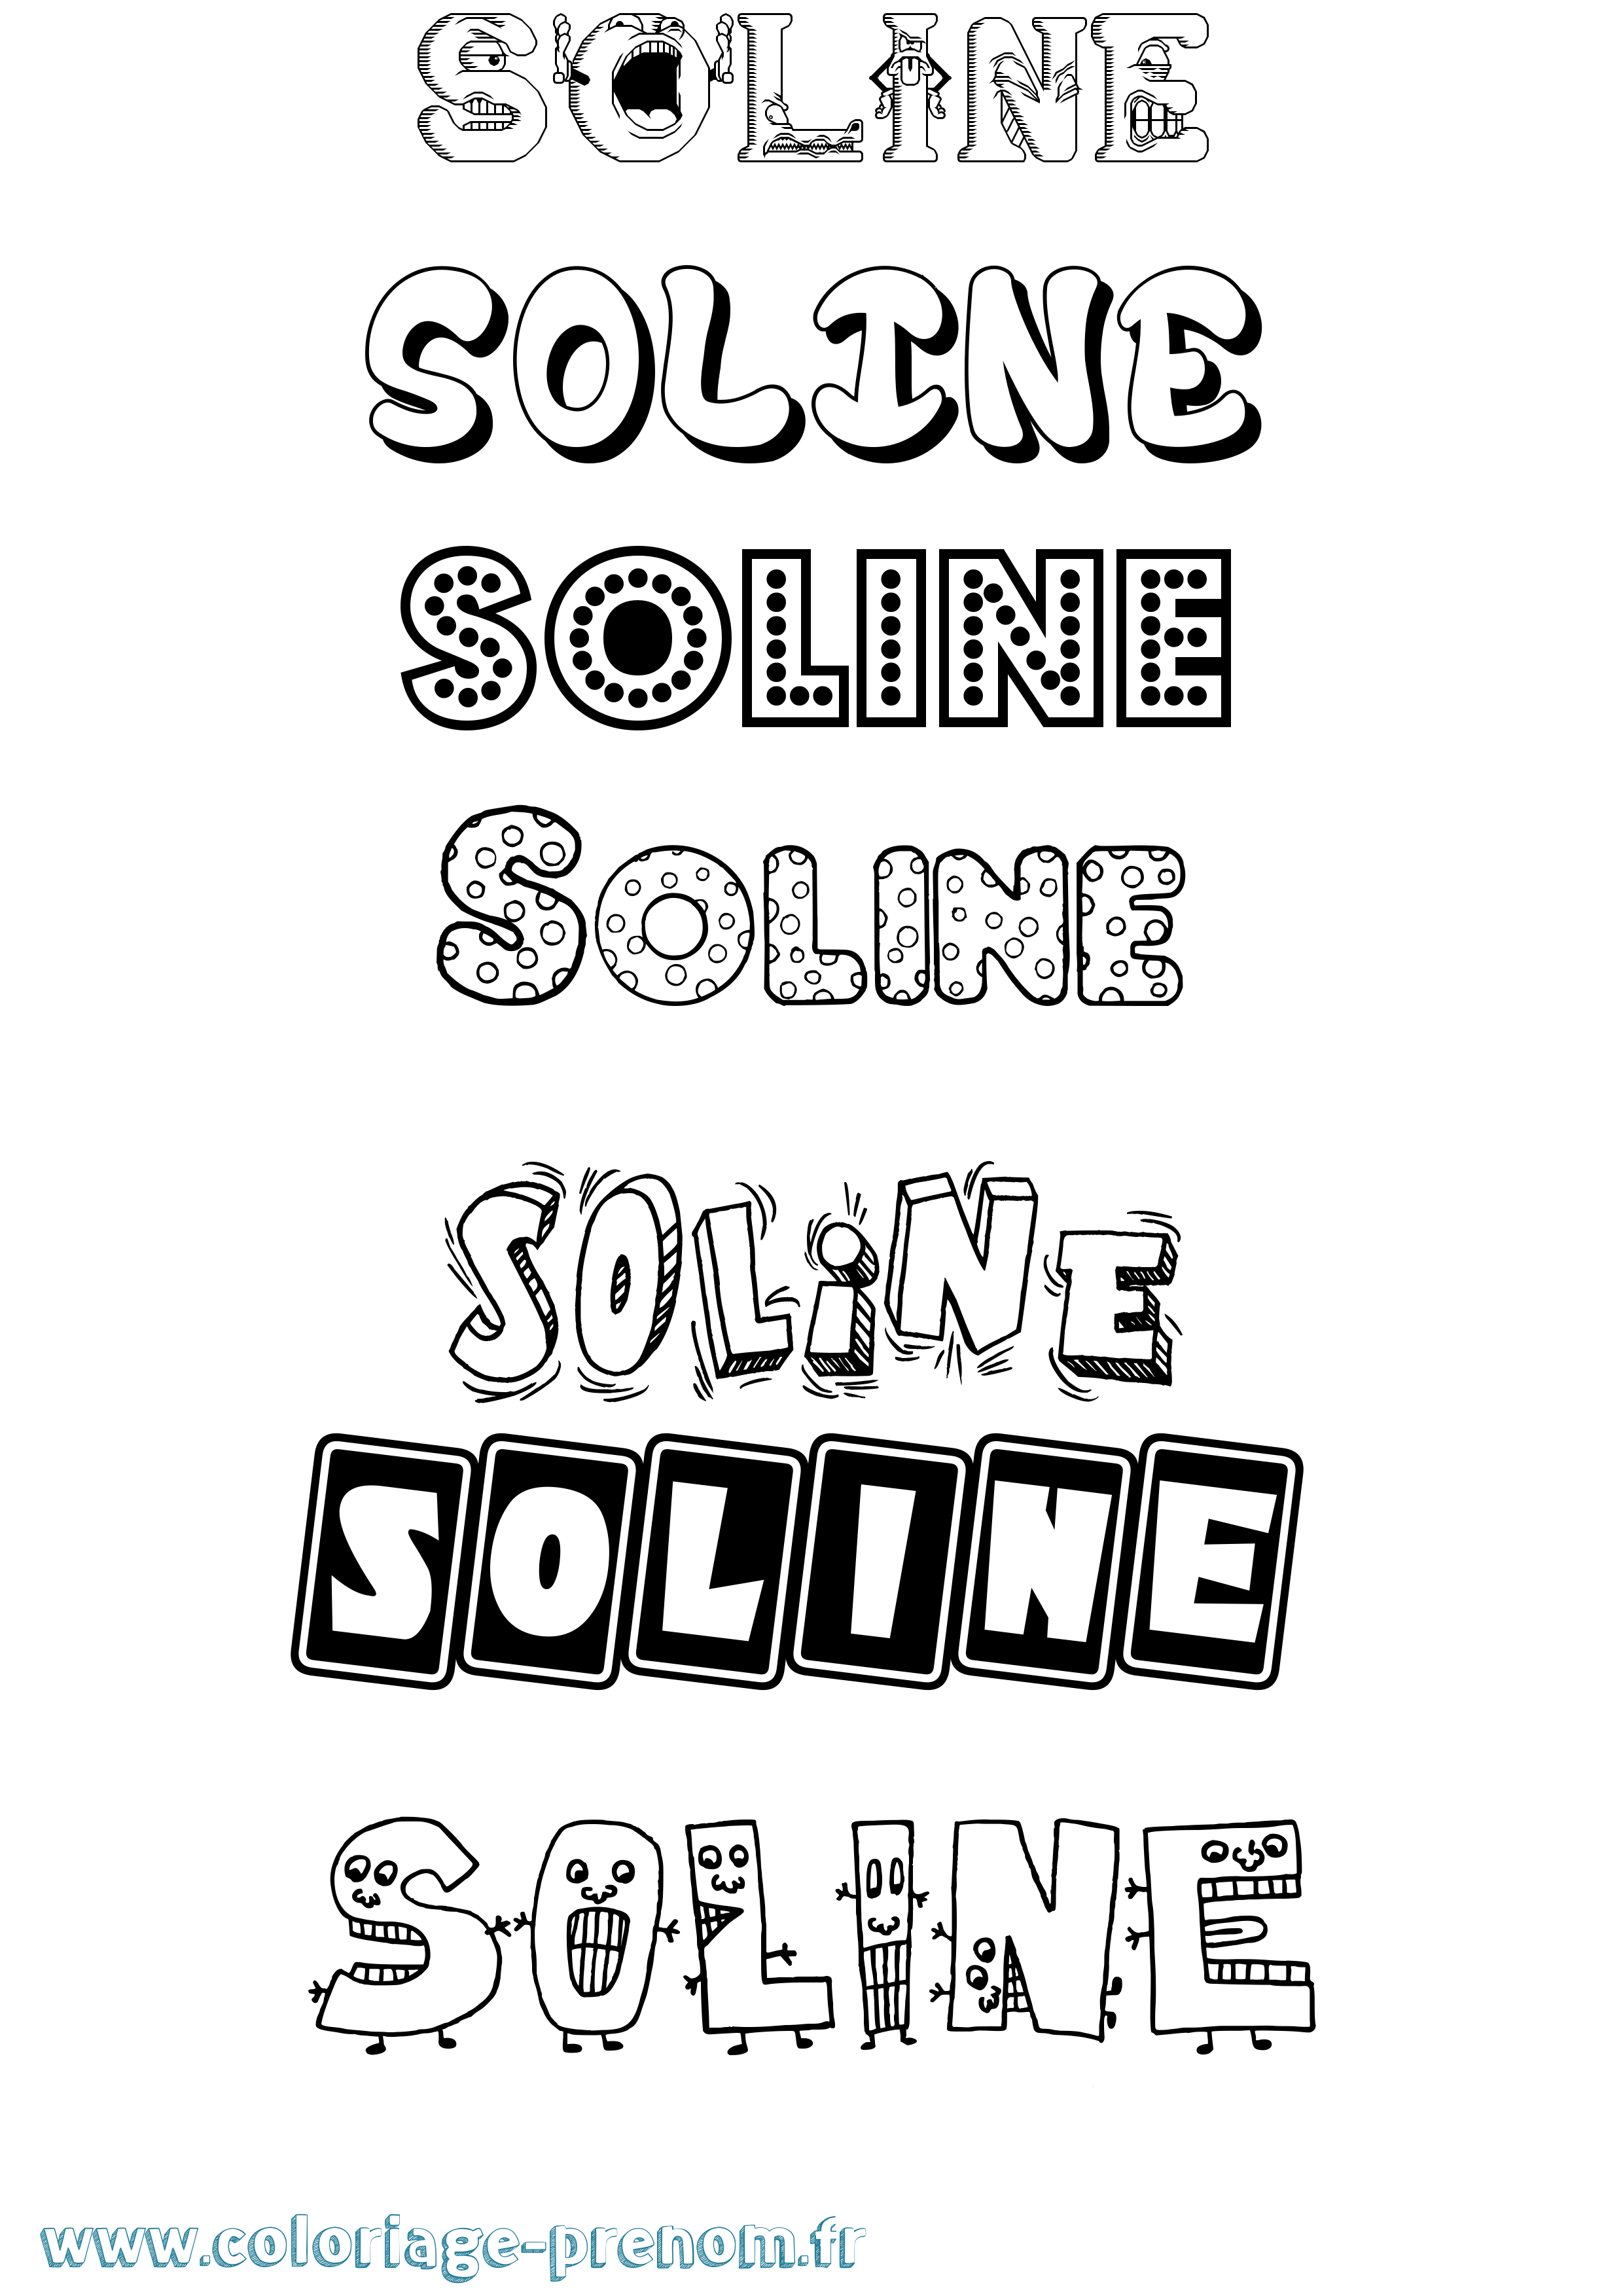 Coloriage prénom Soline